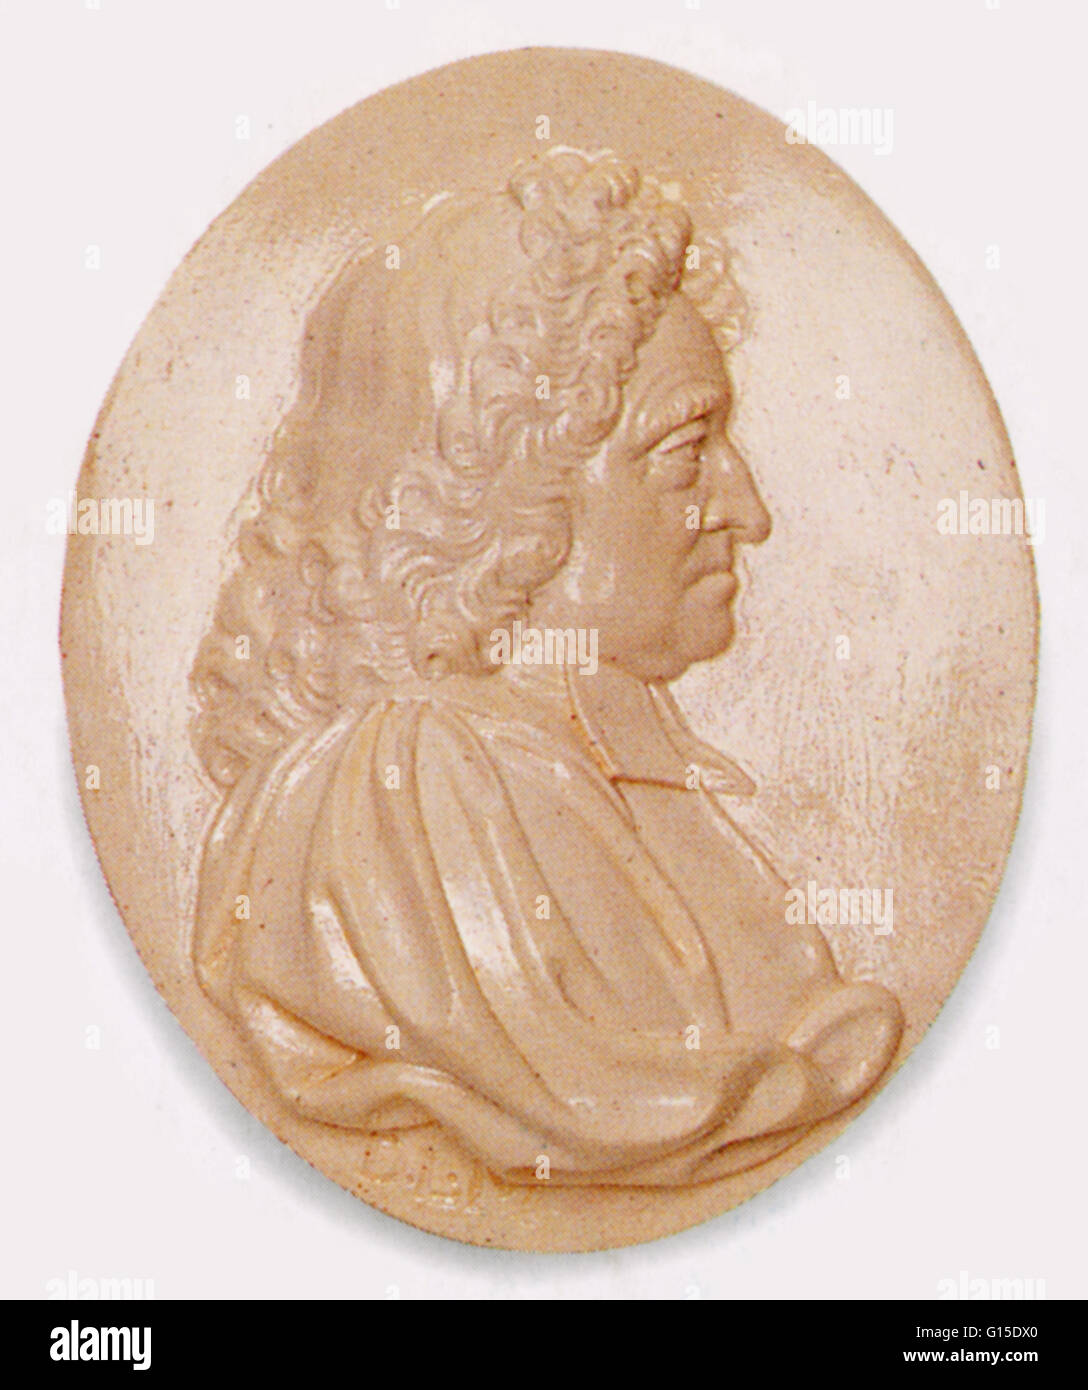 Ngland nominato primo Astronomo Reale, John Flamsteed (1646-1719) nel 1675. Egli ha vissuto e lavorato presso il Royal Observatory, Greenwich, costruito dal re Carlo II d'Inghilterra nello stesso anno. Egli ha catalogato oltre 3000 stelle. Flamsteed calcolato in modo preciso Foto Stock